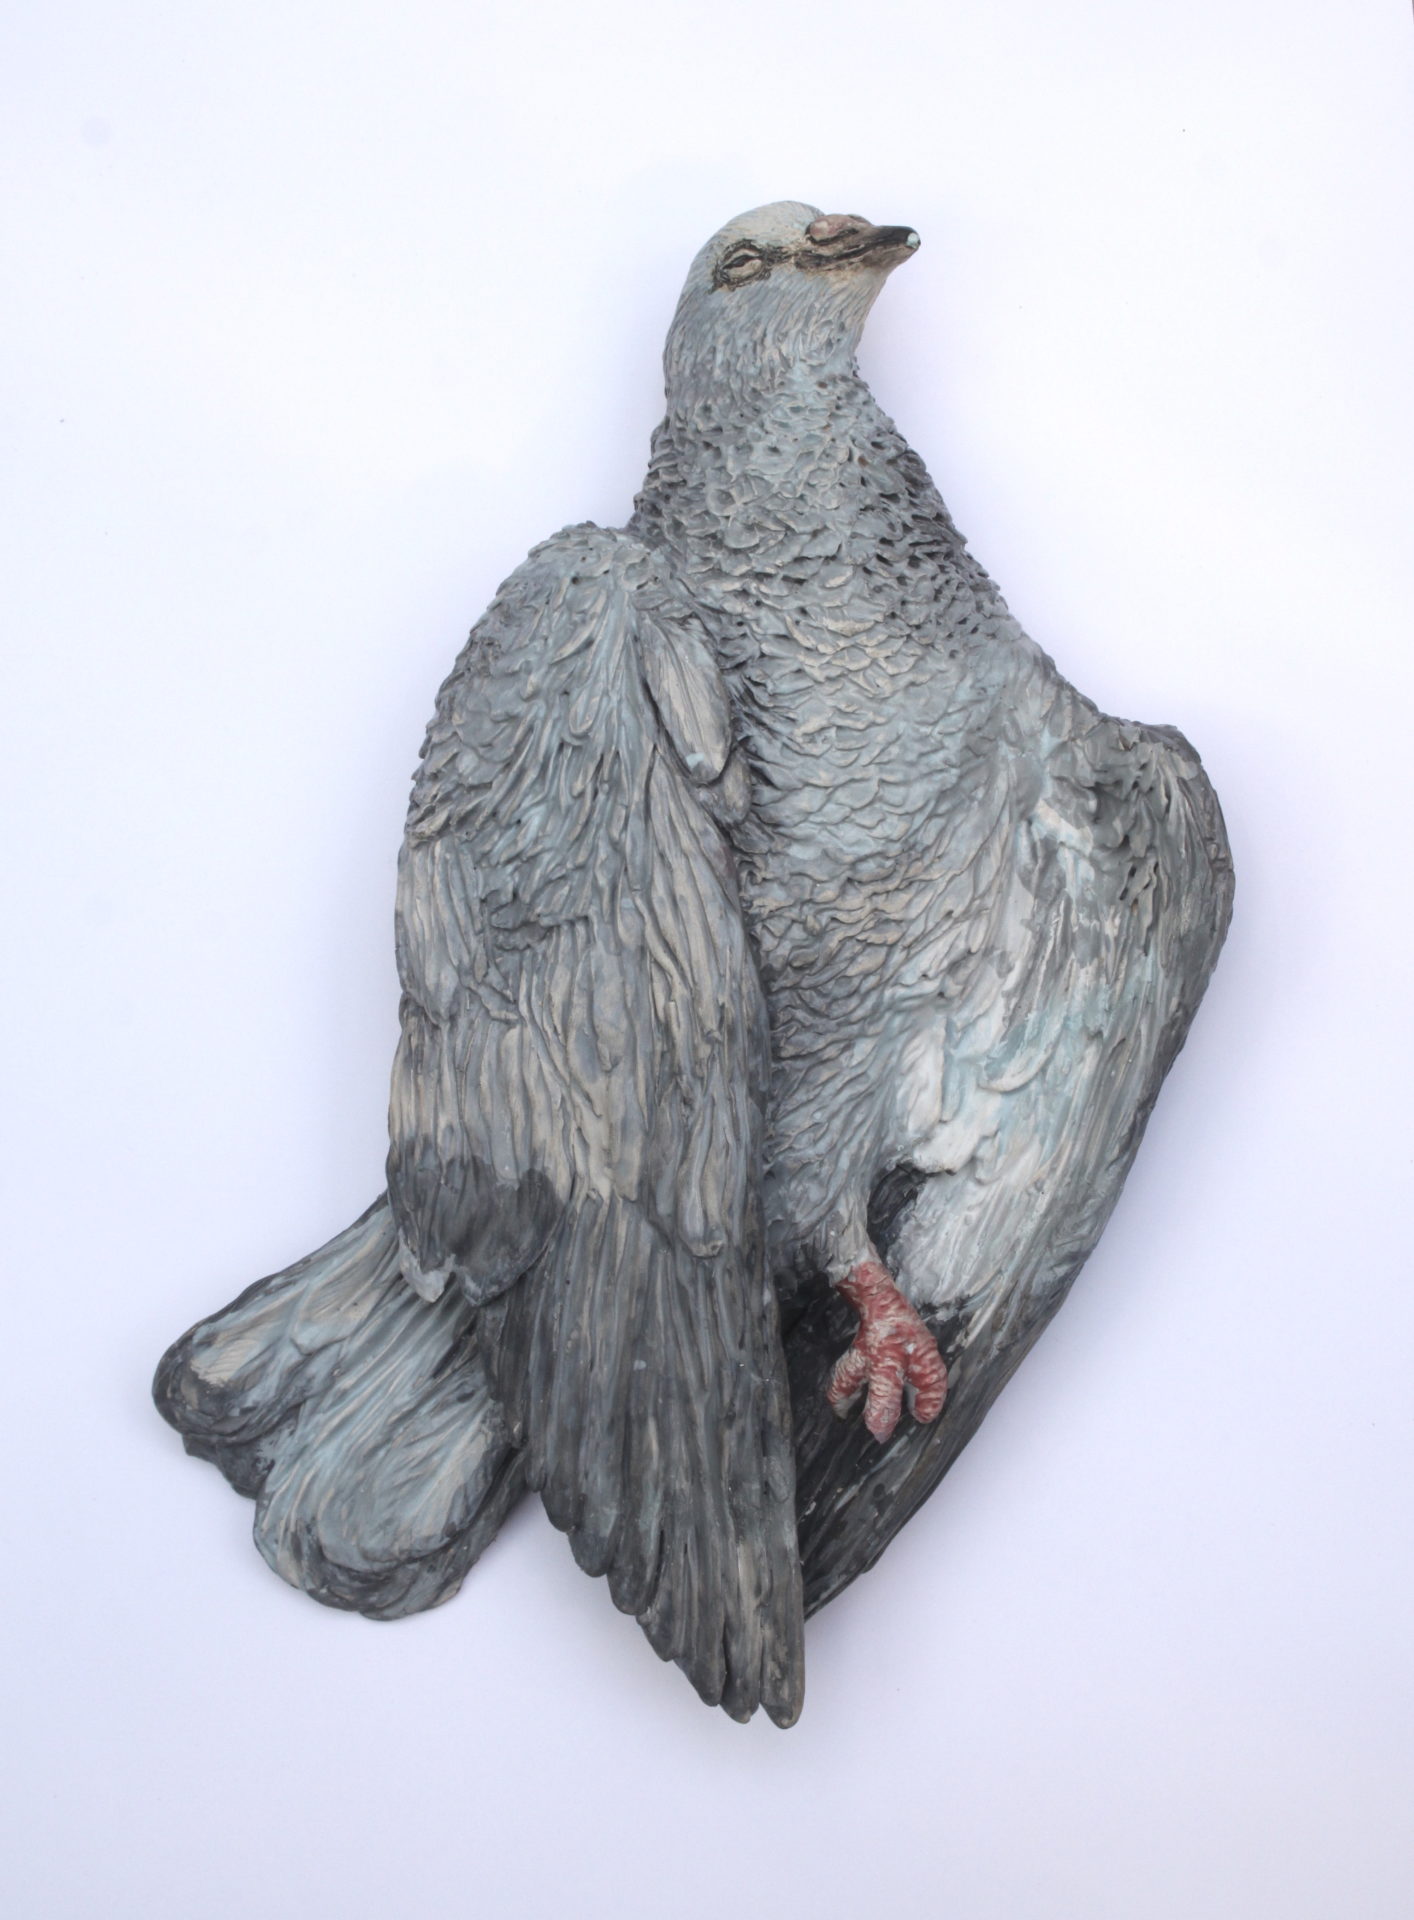 Oiseau, céramique et terre de faïence émaillée, 40 x 21 x 5 cm, 2019, Collection privée